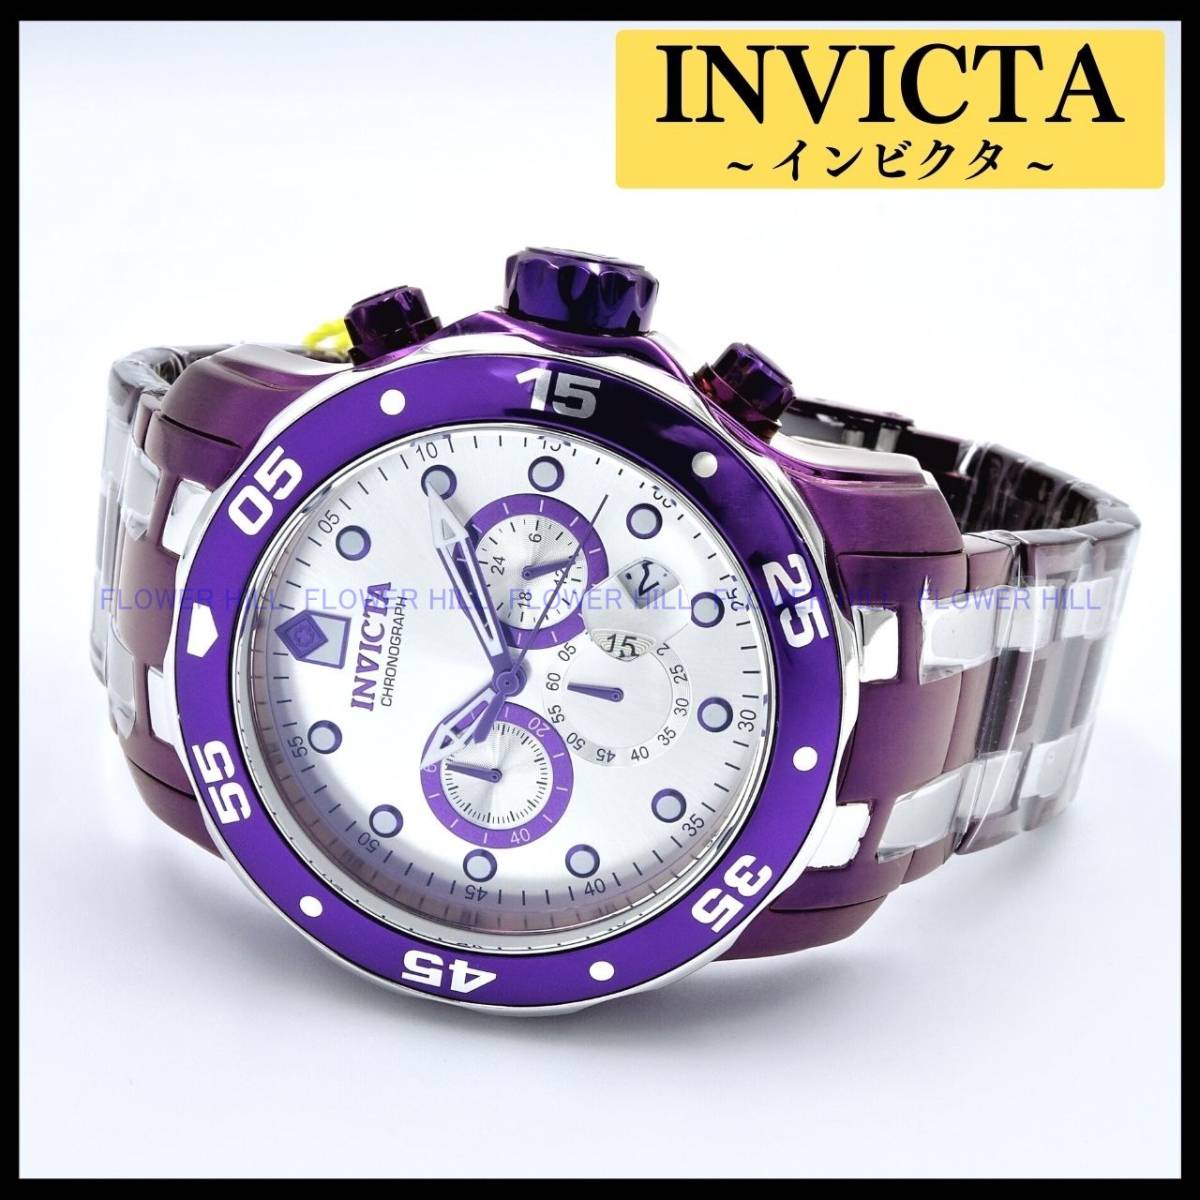 【新品・送料無料】インビクタ INVICTA 腕時計 メンズ 40922 プロダイバー PRO DIVER クォーツ パープル クロノグラフ メタルバンド